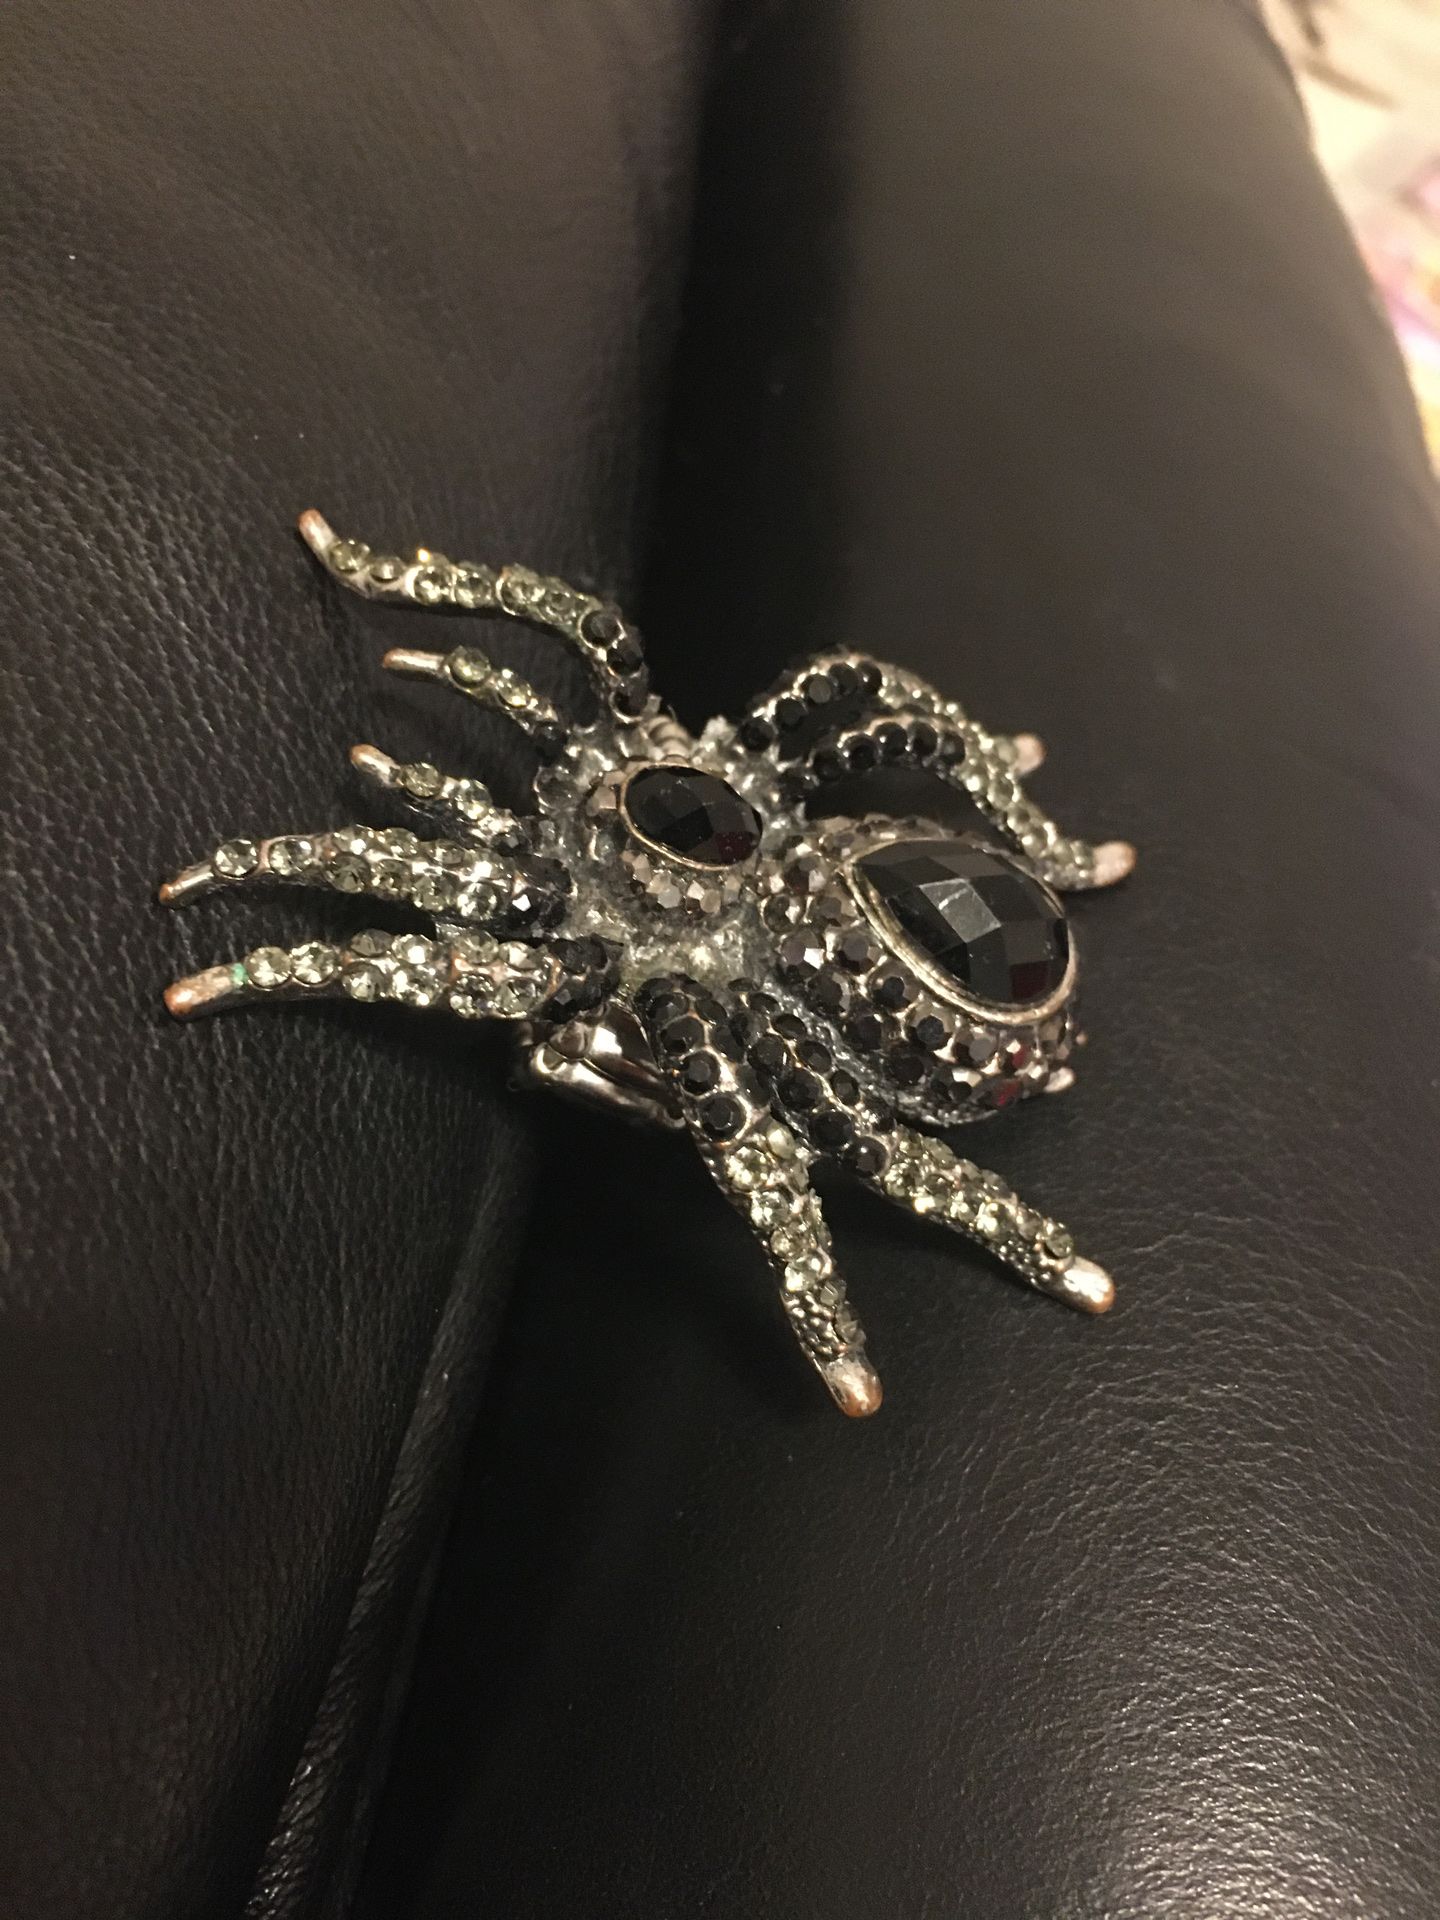 Spider gem ring